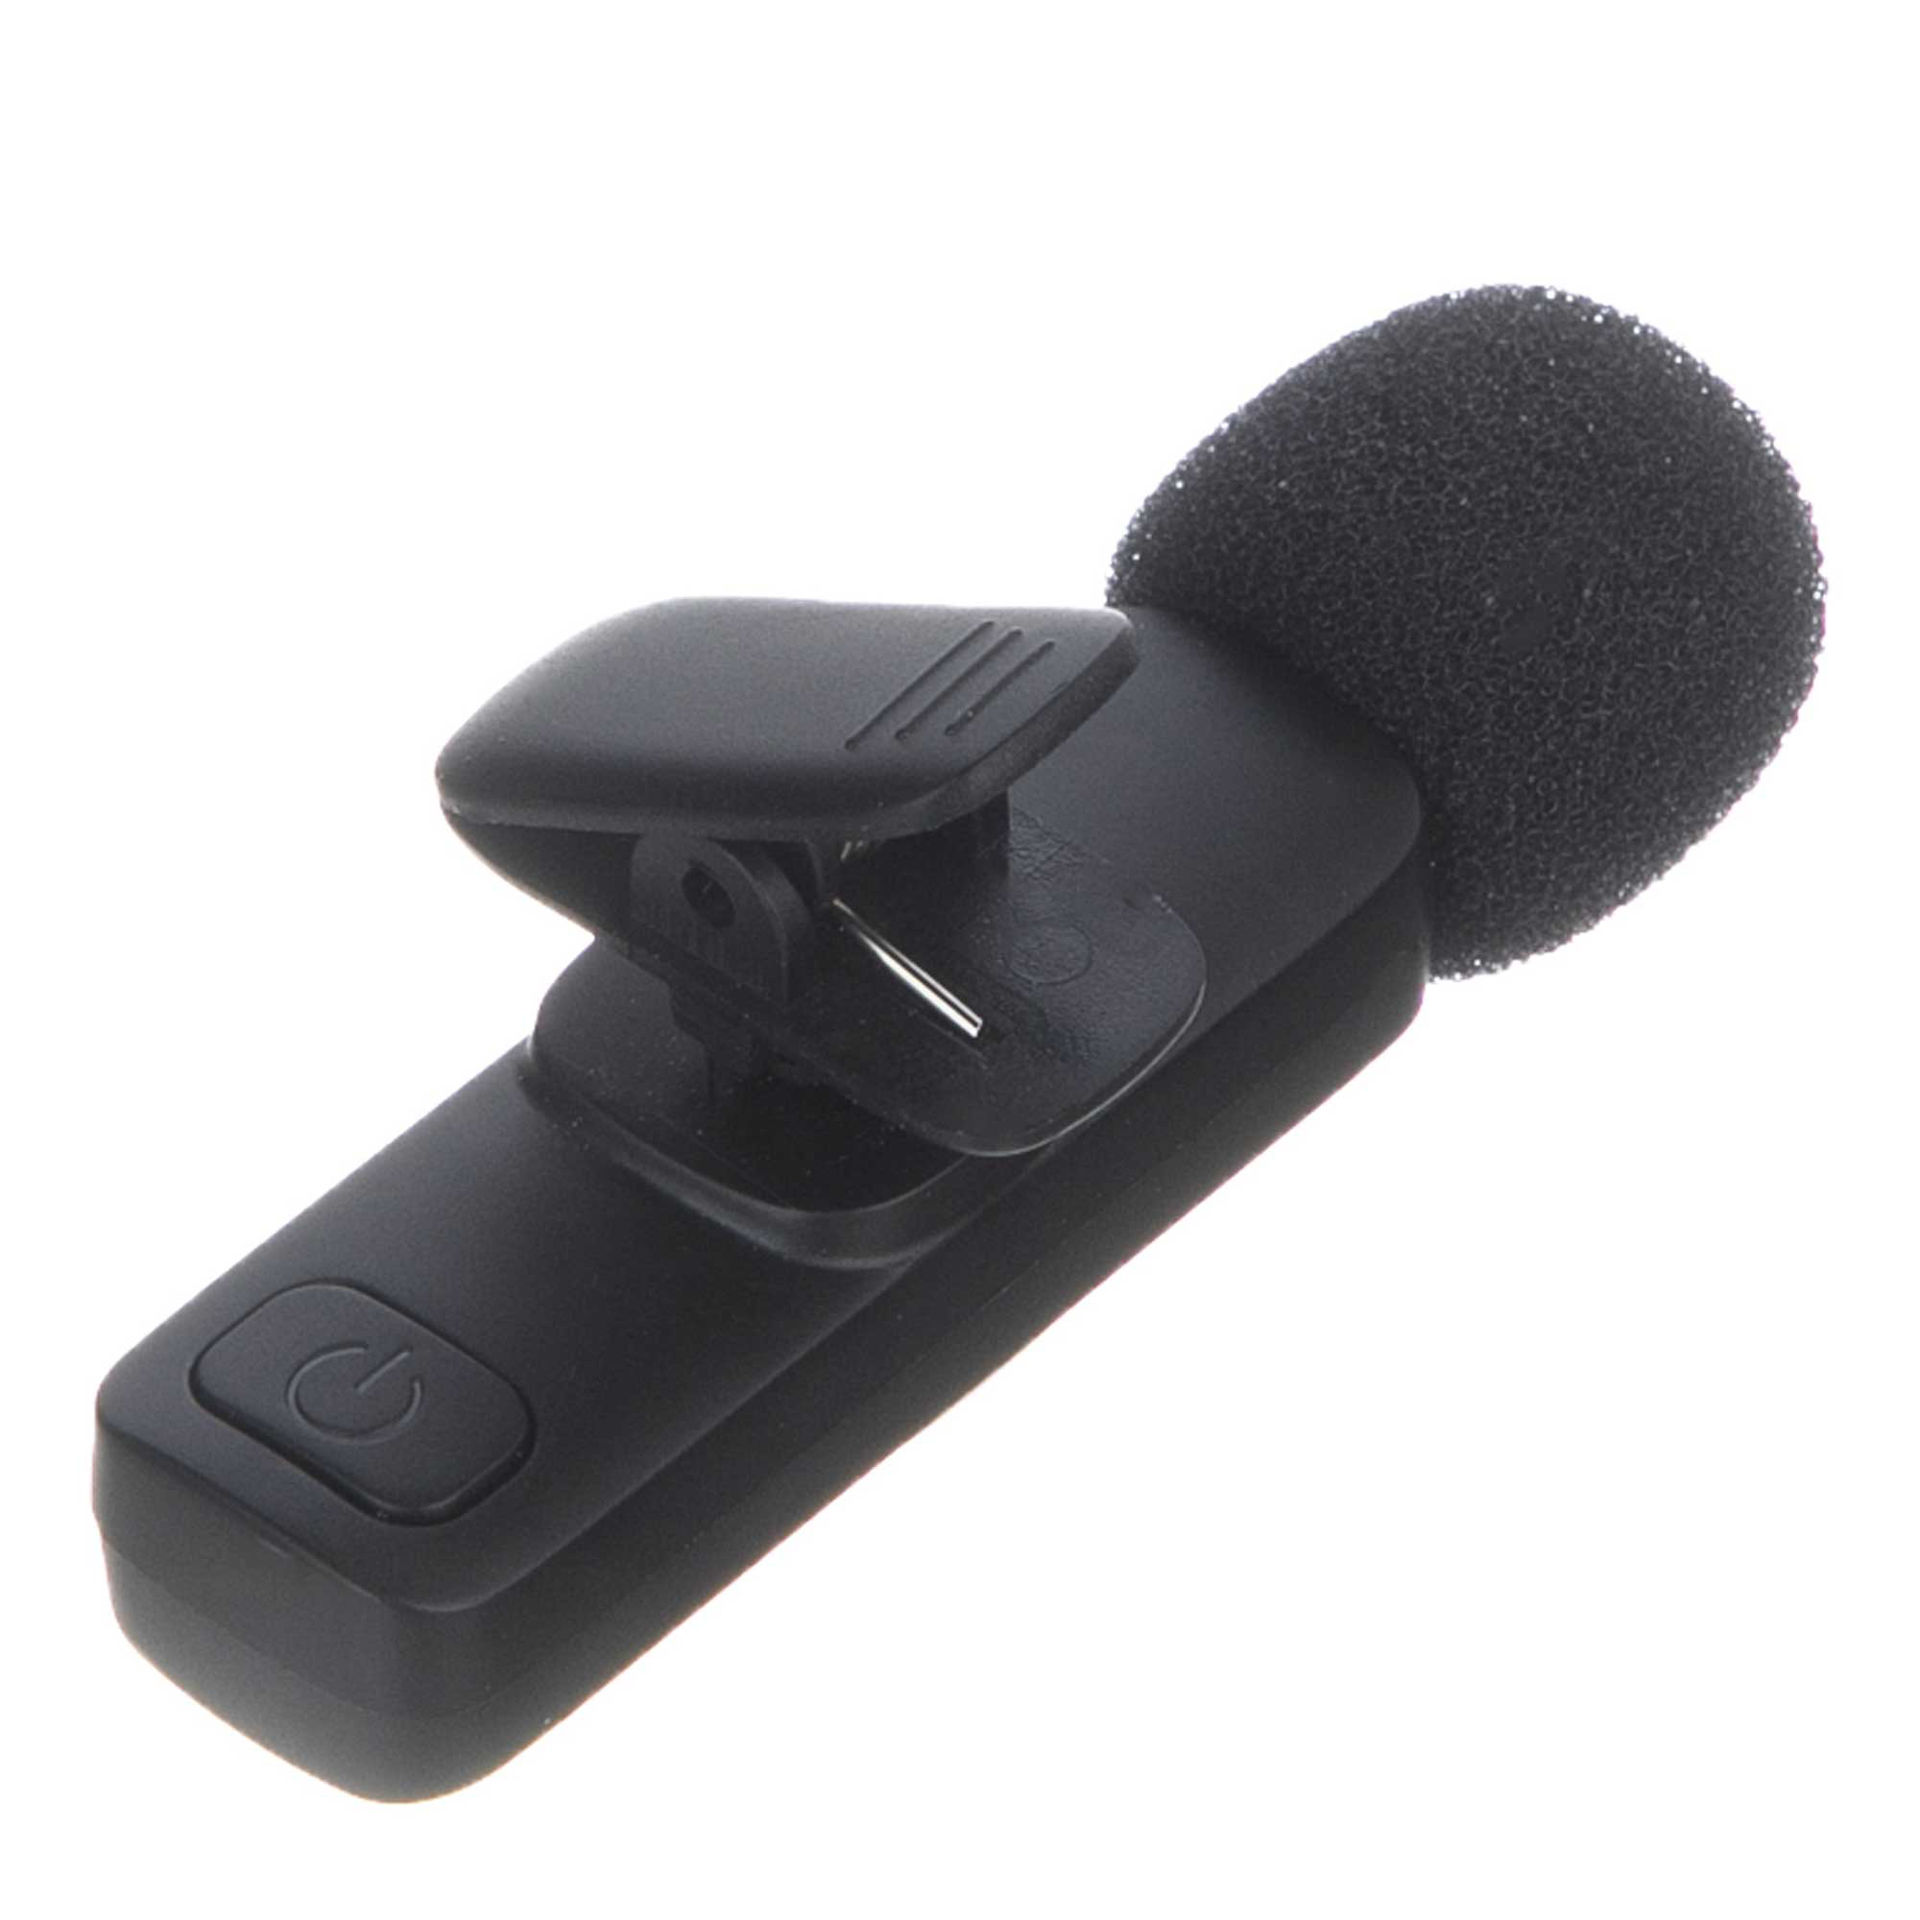 میکروفون یقه ای بدون سیم هیرو مدل MICROPHONE HERO K9 به همراه رابط LIGHTNING و Type-C